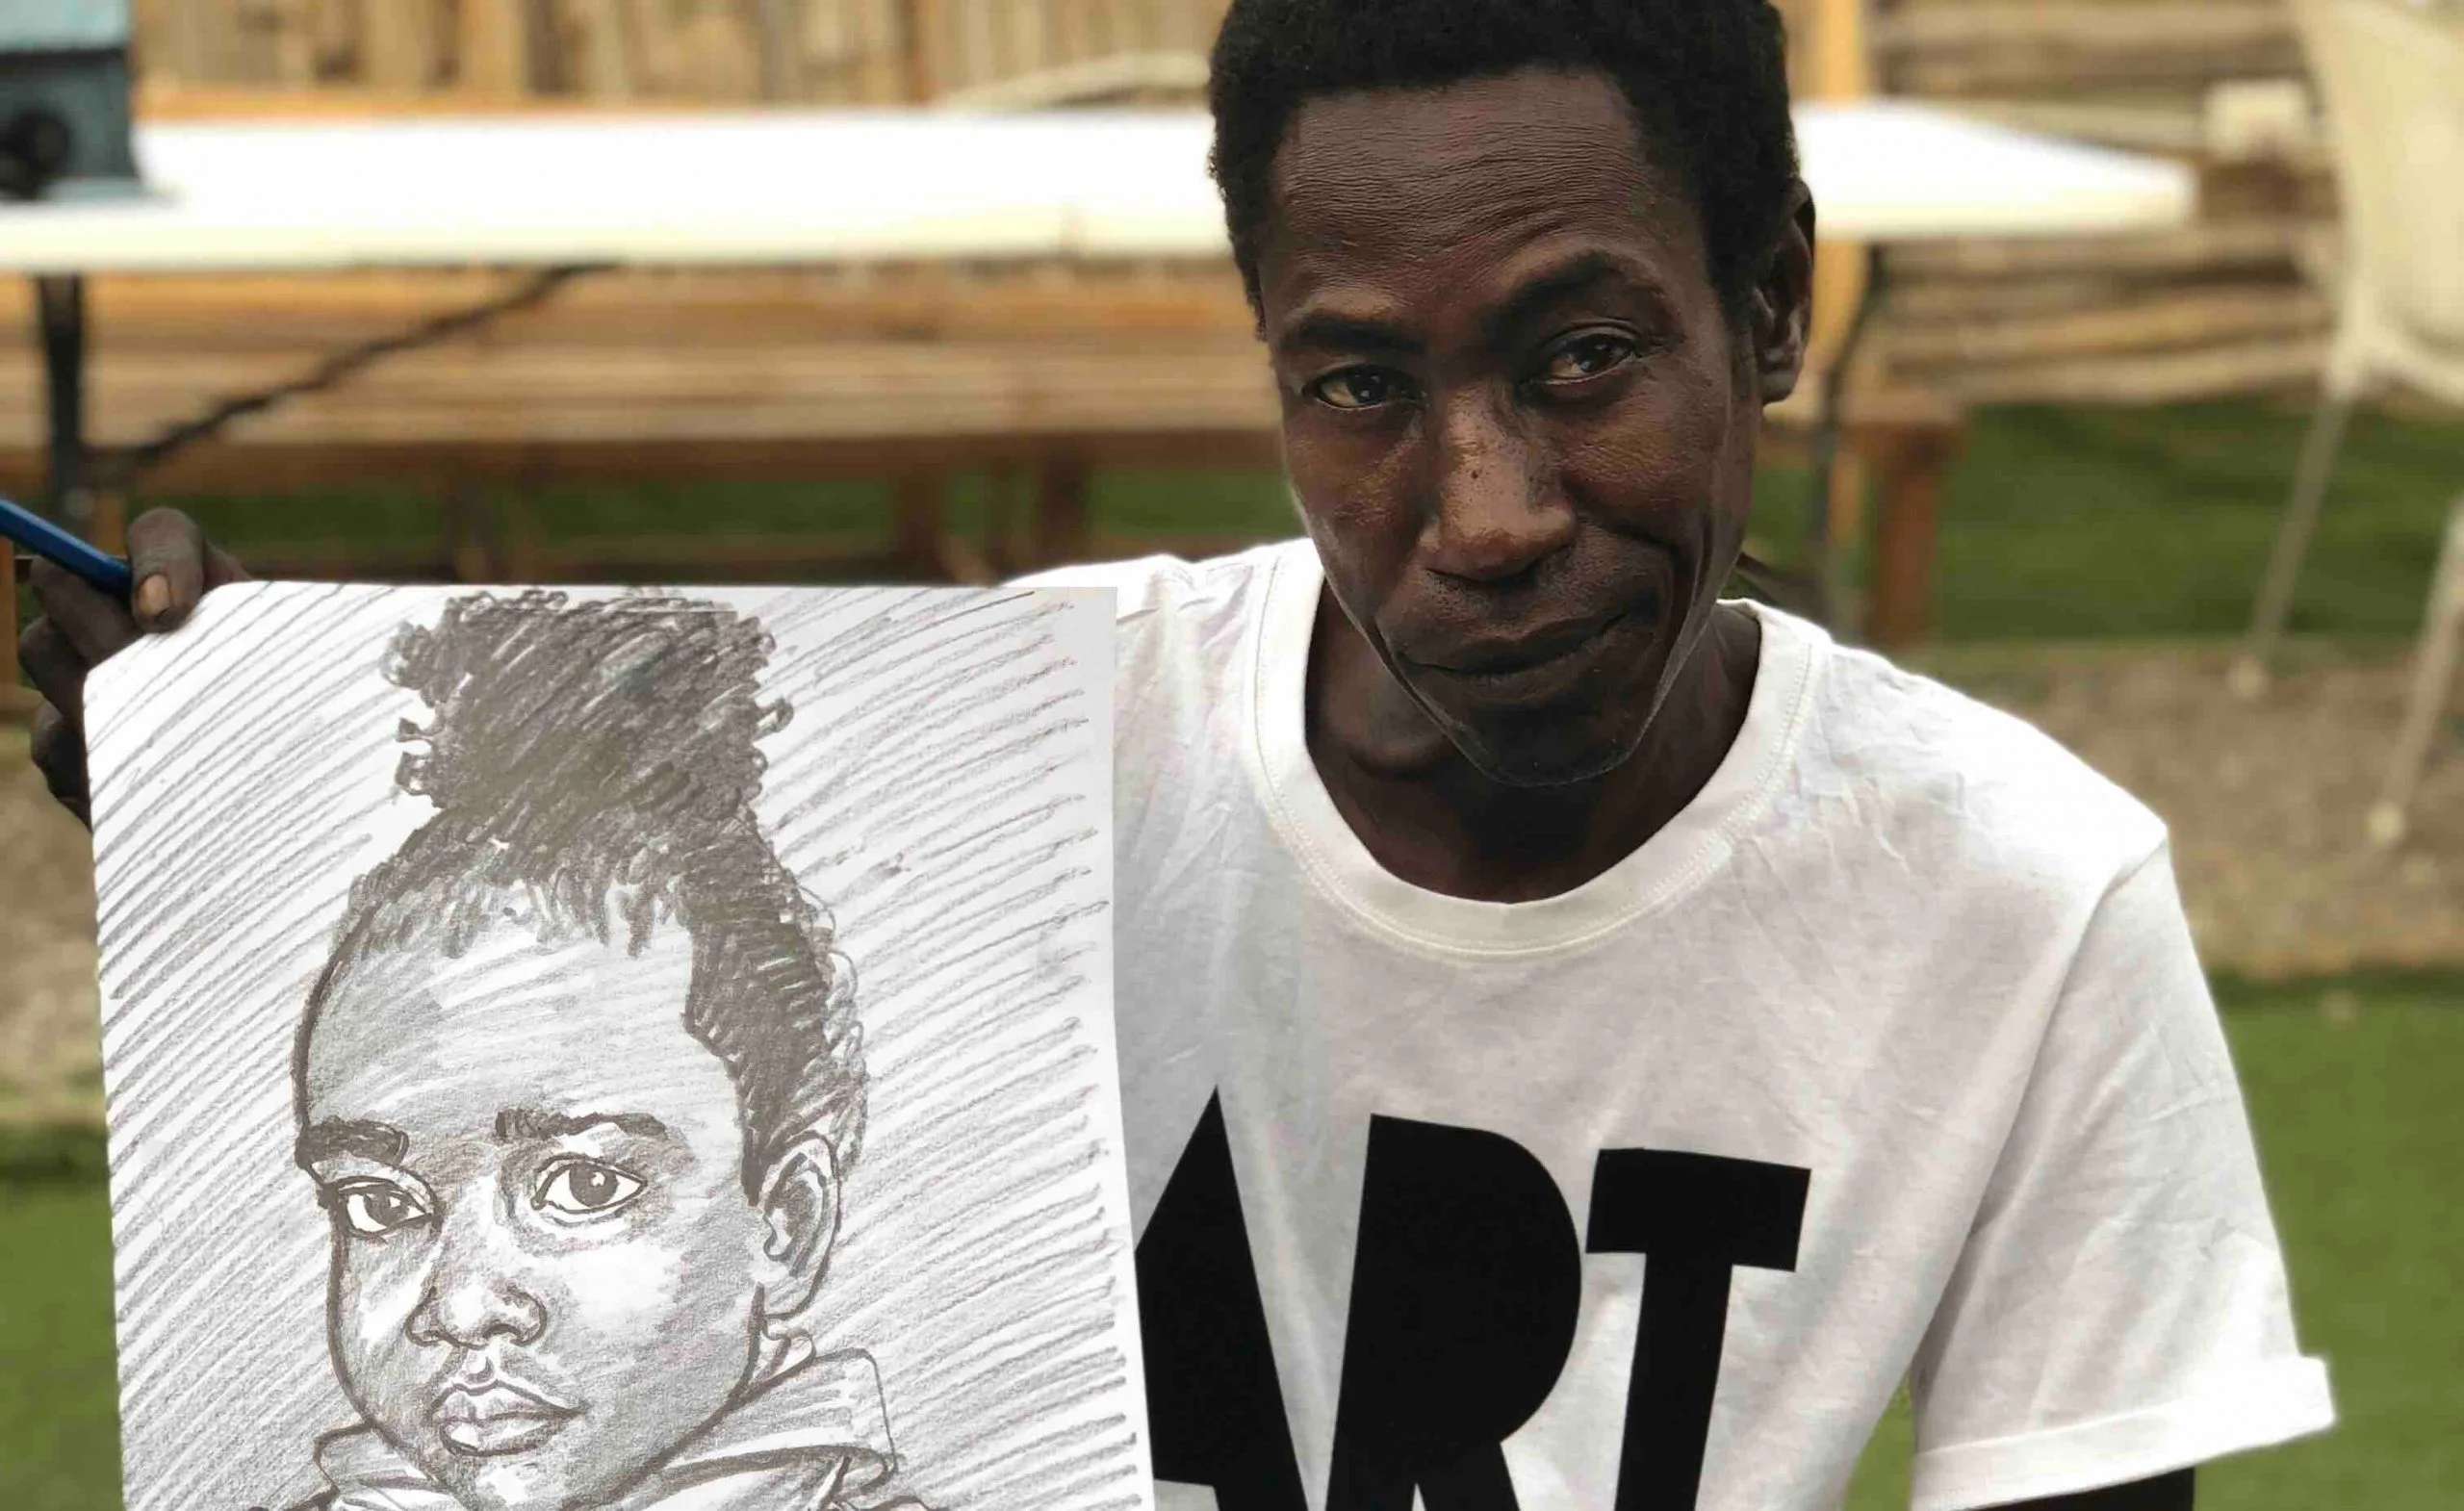 Grâce aux internautes, ce portraitiste de rue va changer de vie